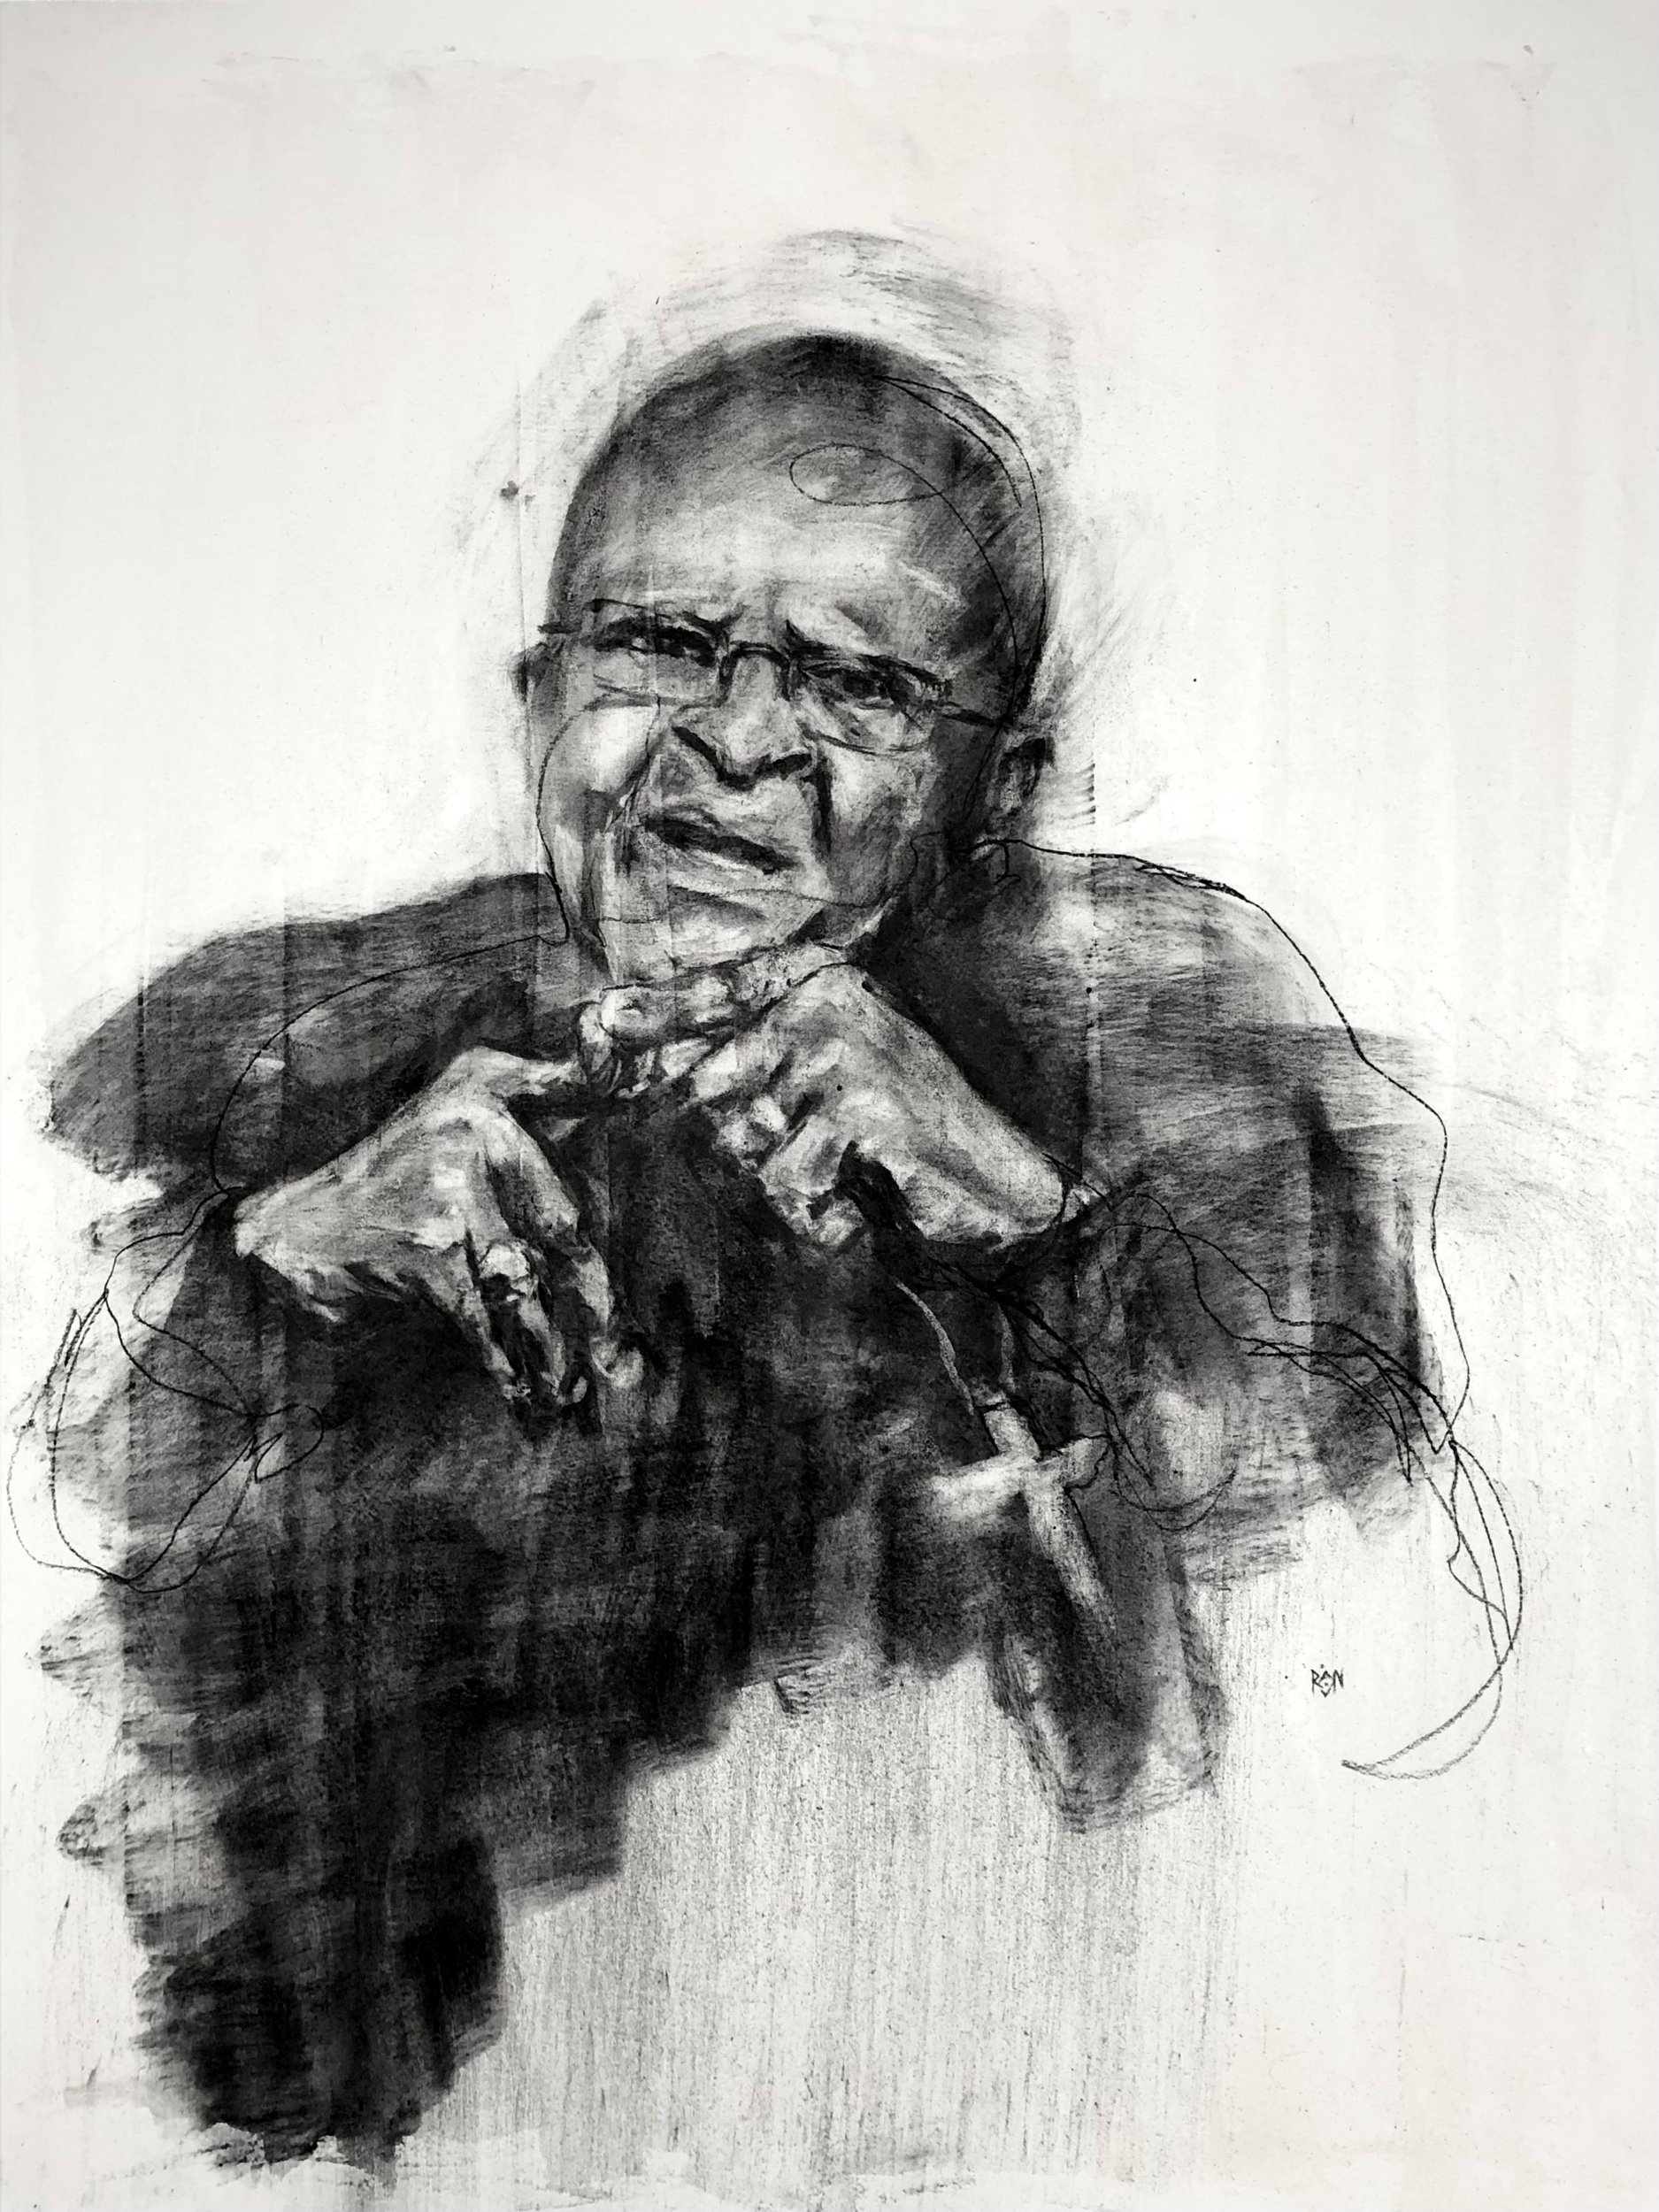 Remembering Desmond Tutu